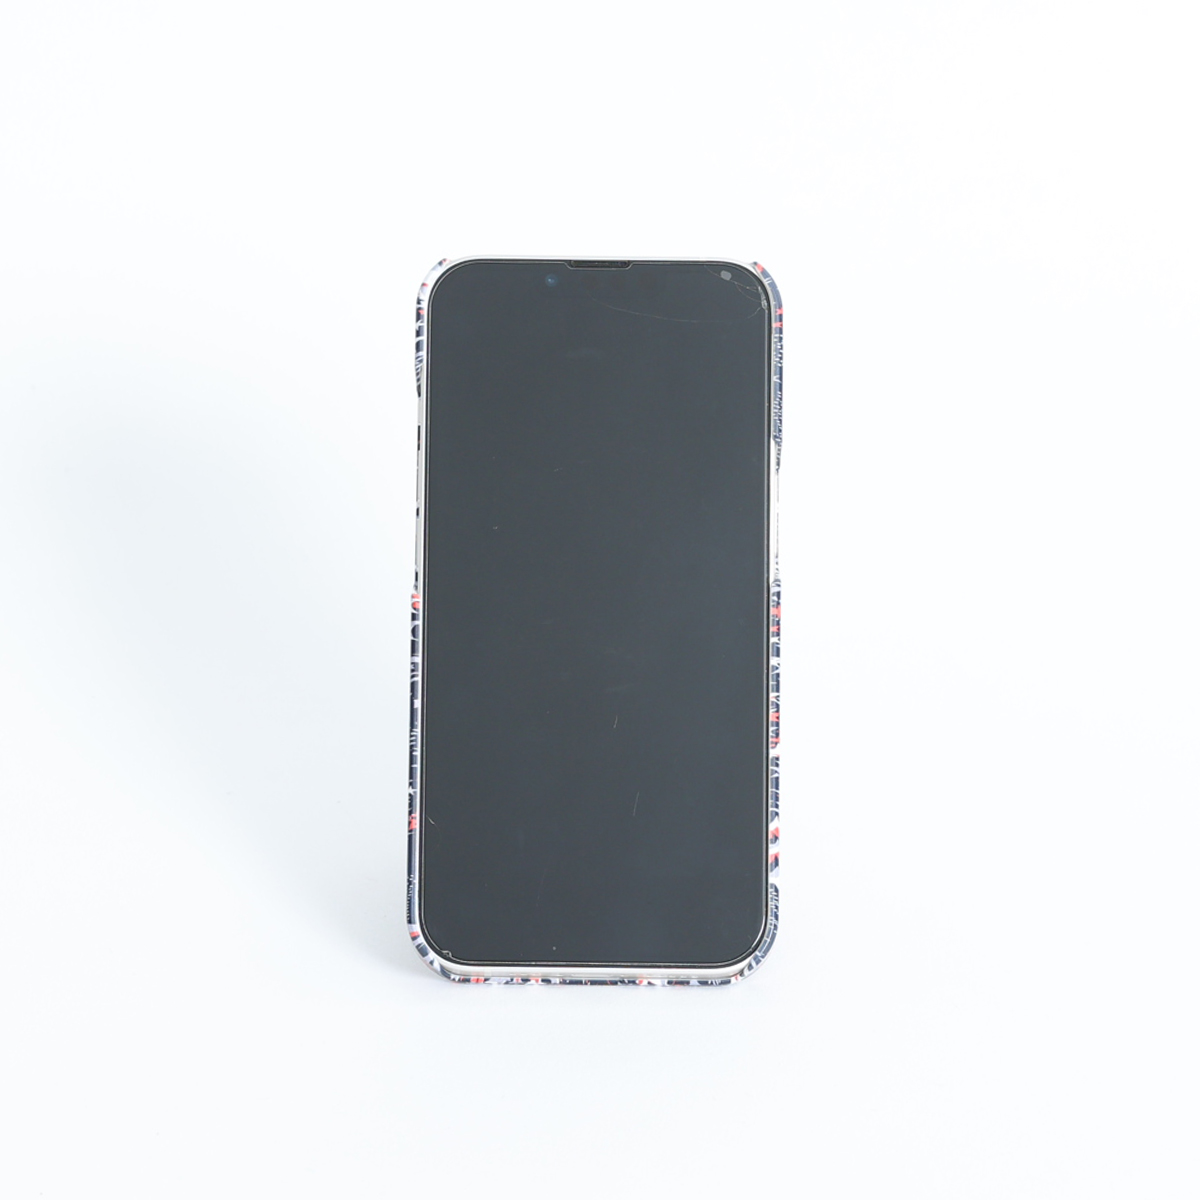 11月下旬お届け予定ご受注商品『Have a nice day WHITE×BLACK』 Android hard case画像